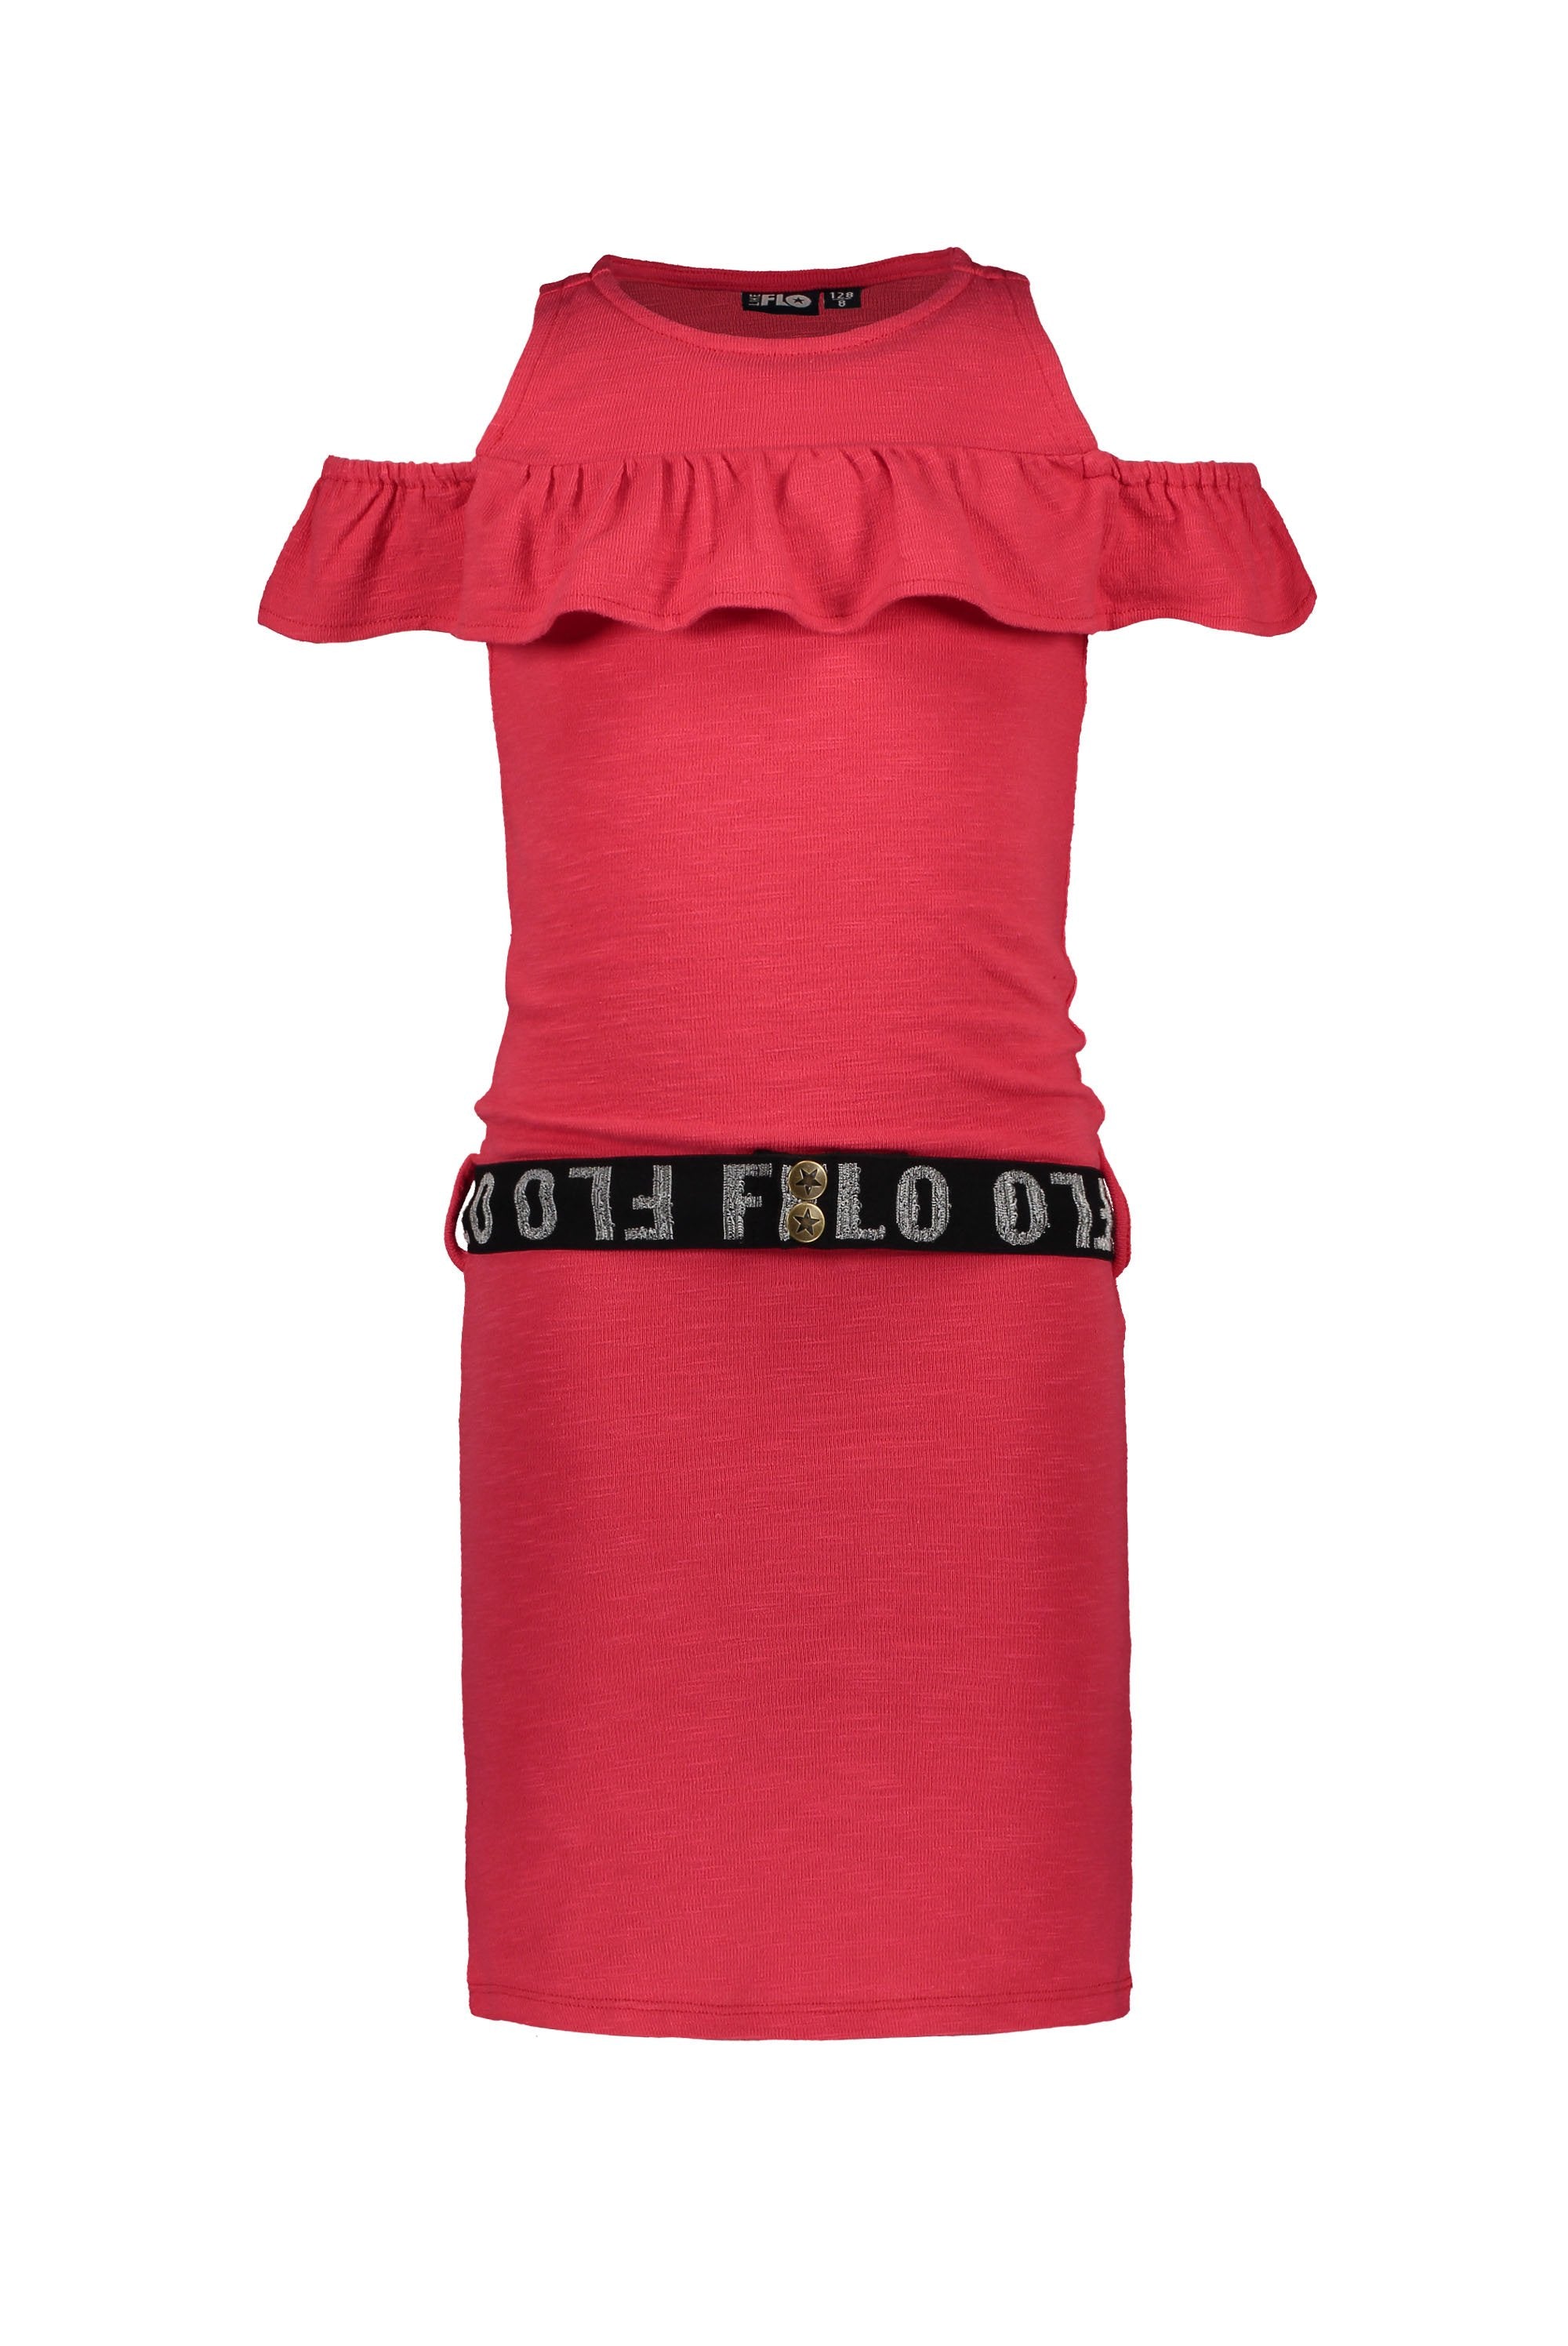 Meisjes Flo girls slub jersey ruffle dress van Flo in de kleur Cerise in maat 140.